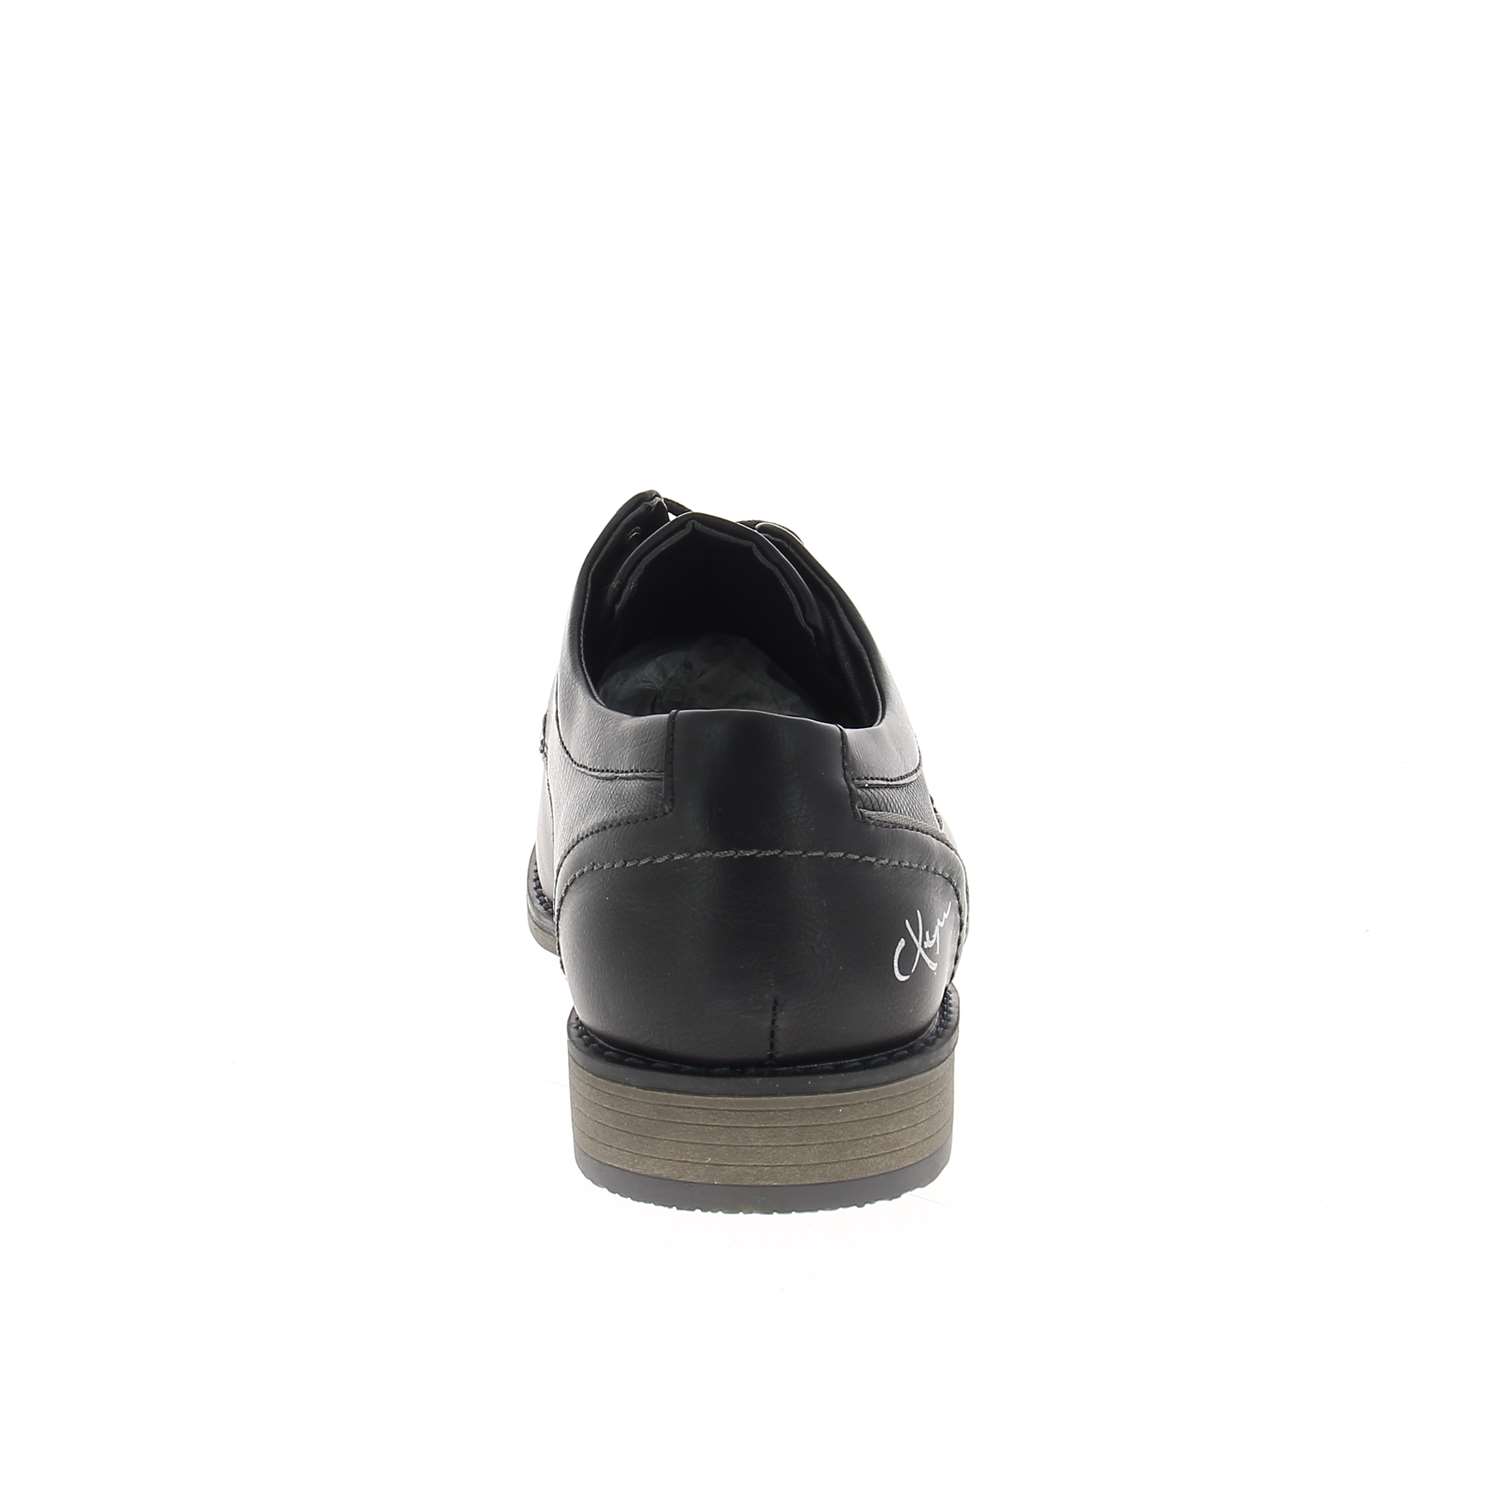 04 - KERCRI - XAPI - Chaussures à lacets - Synthétique